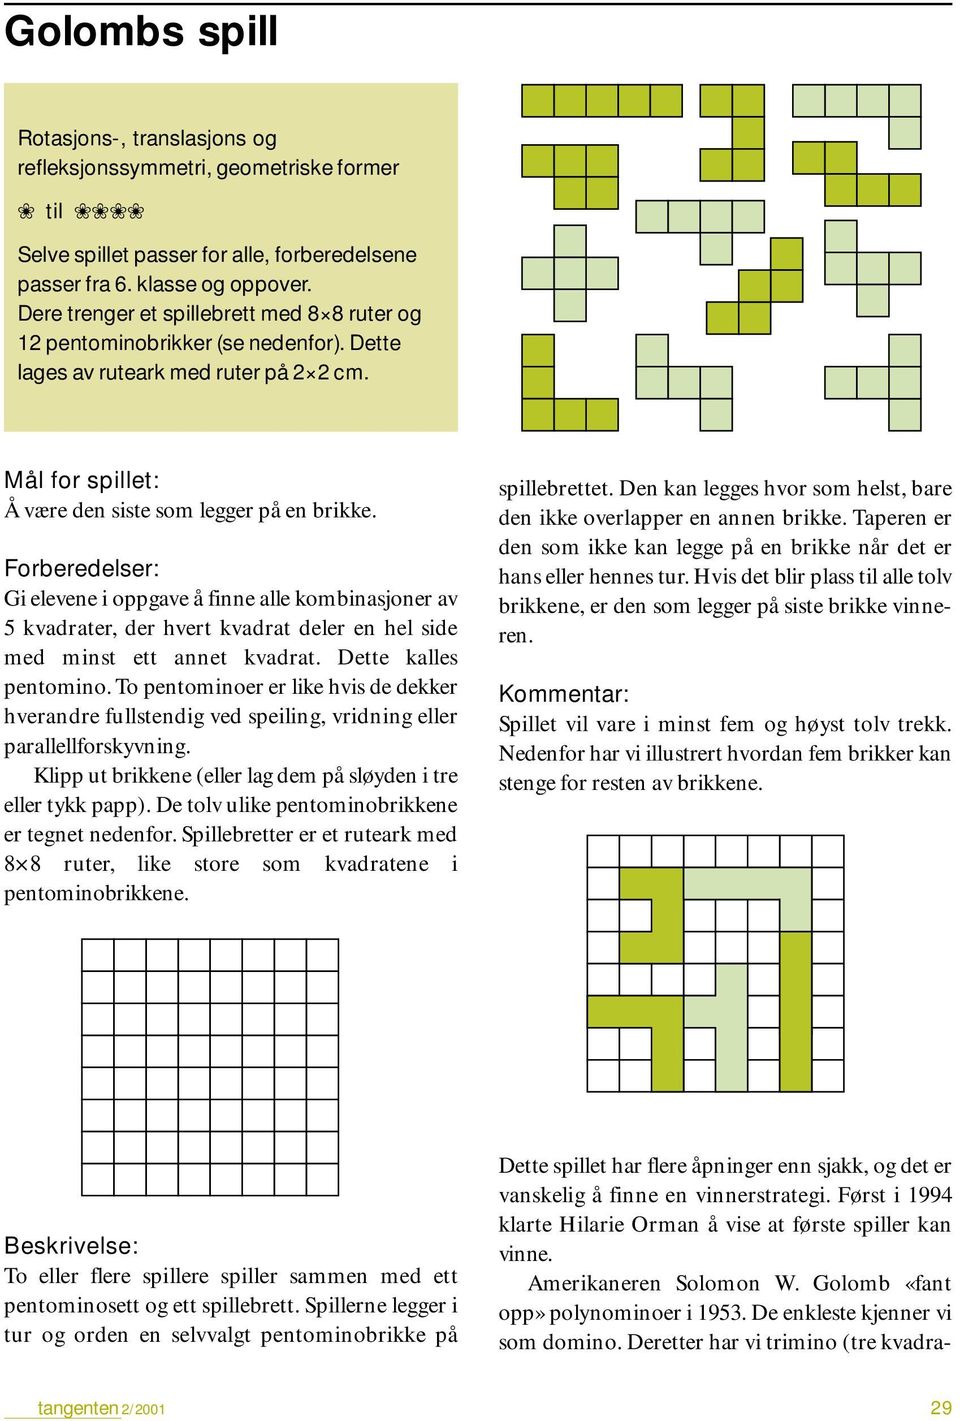 Forberedelser: Gi elevene i oppgave å finne alle kombinasjoner av 5 kvadrater, der hvert kvadrat deler en hel side med minst ett annet kvadrat. Dette kalles pentomino.